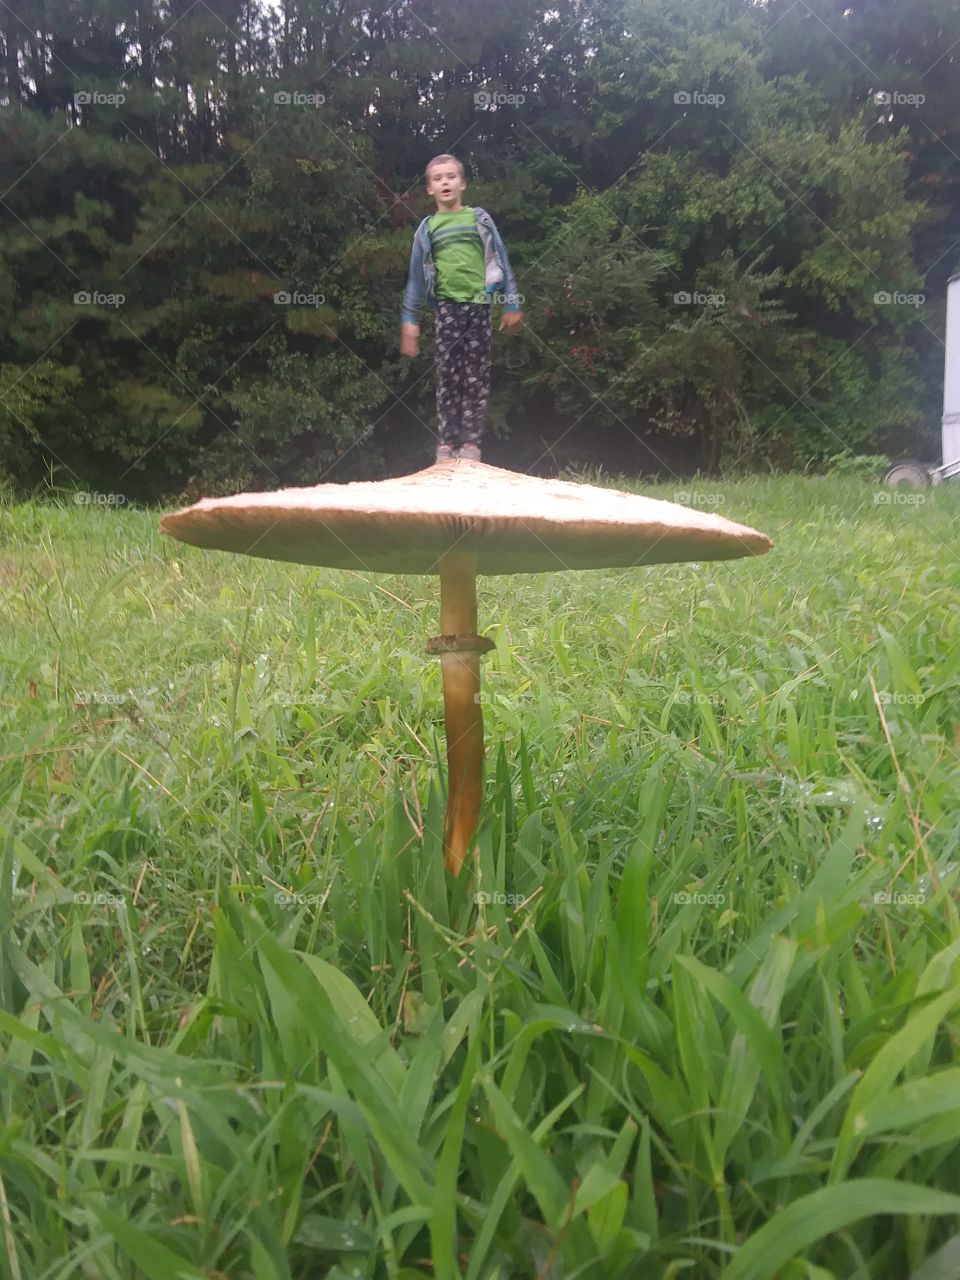 staged standing on mushroom